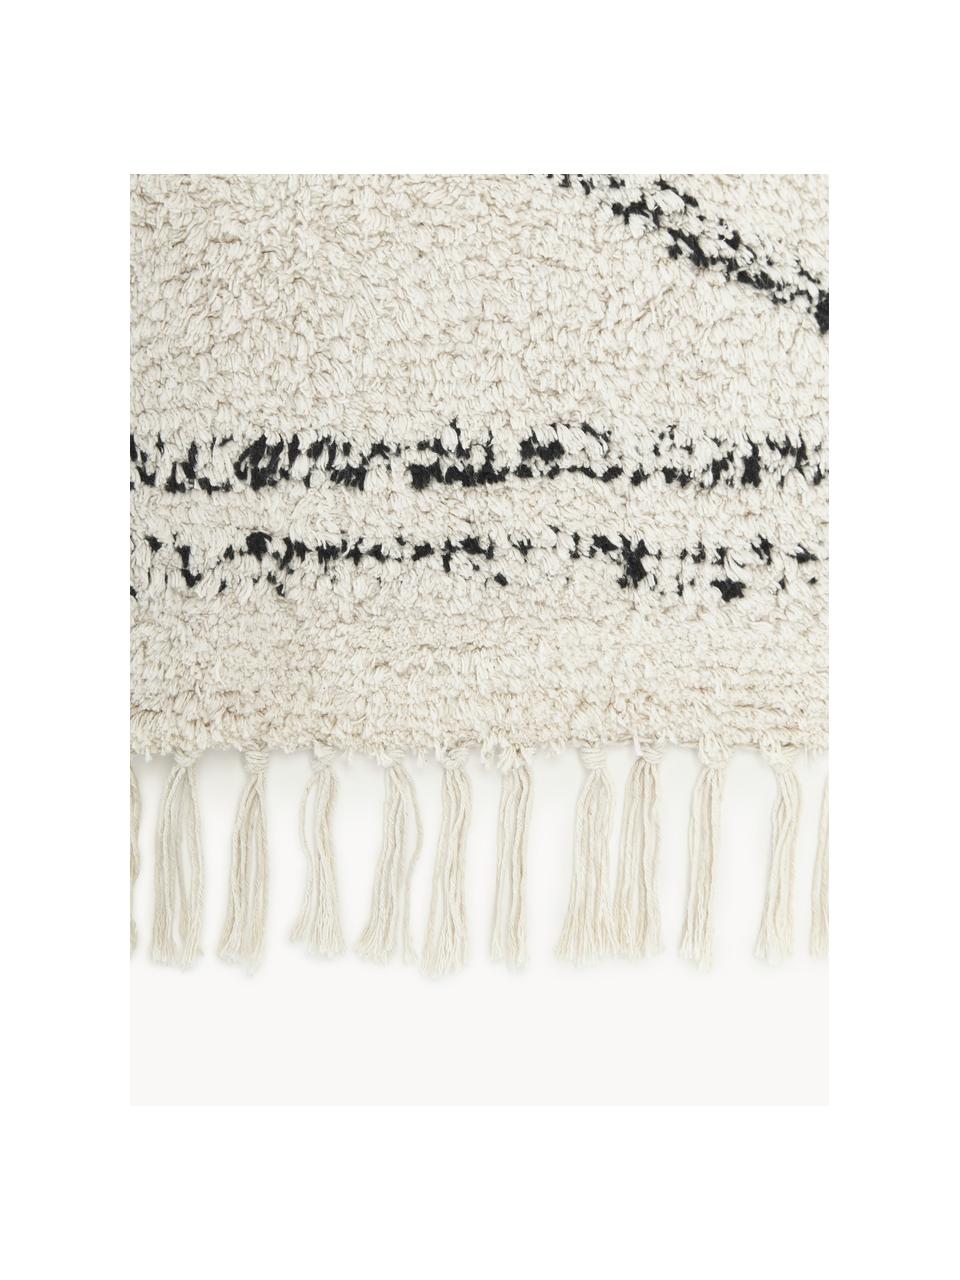 Handgetufteter Baumwollteppich Asisa mit Zickzack-Muster und Fransen, 100% Baumwolle, Hellbeige, Schwarz, B 200 x L 300 cm (Größe L)